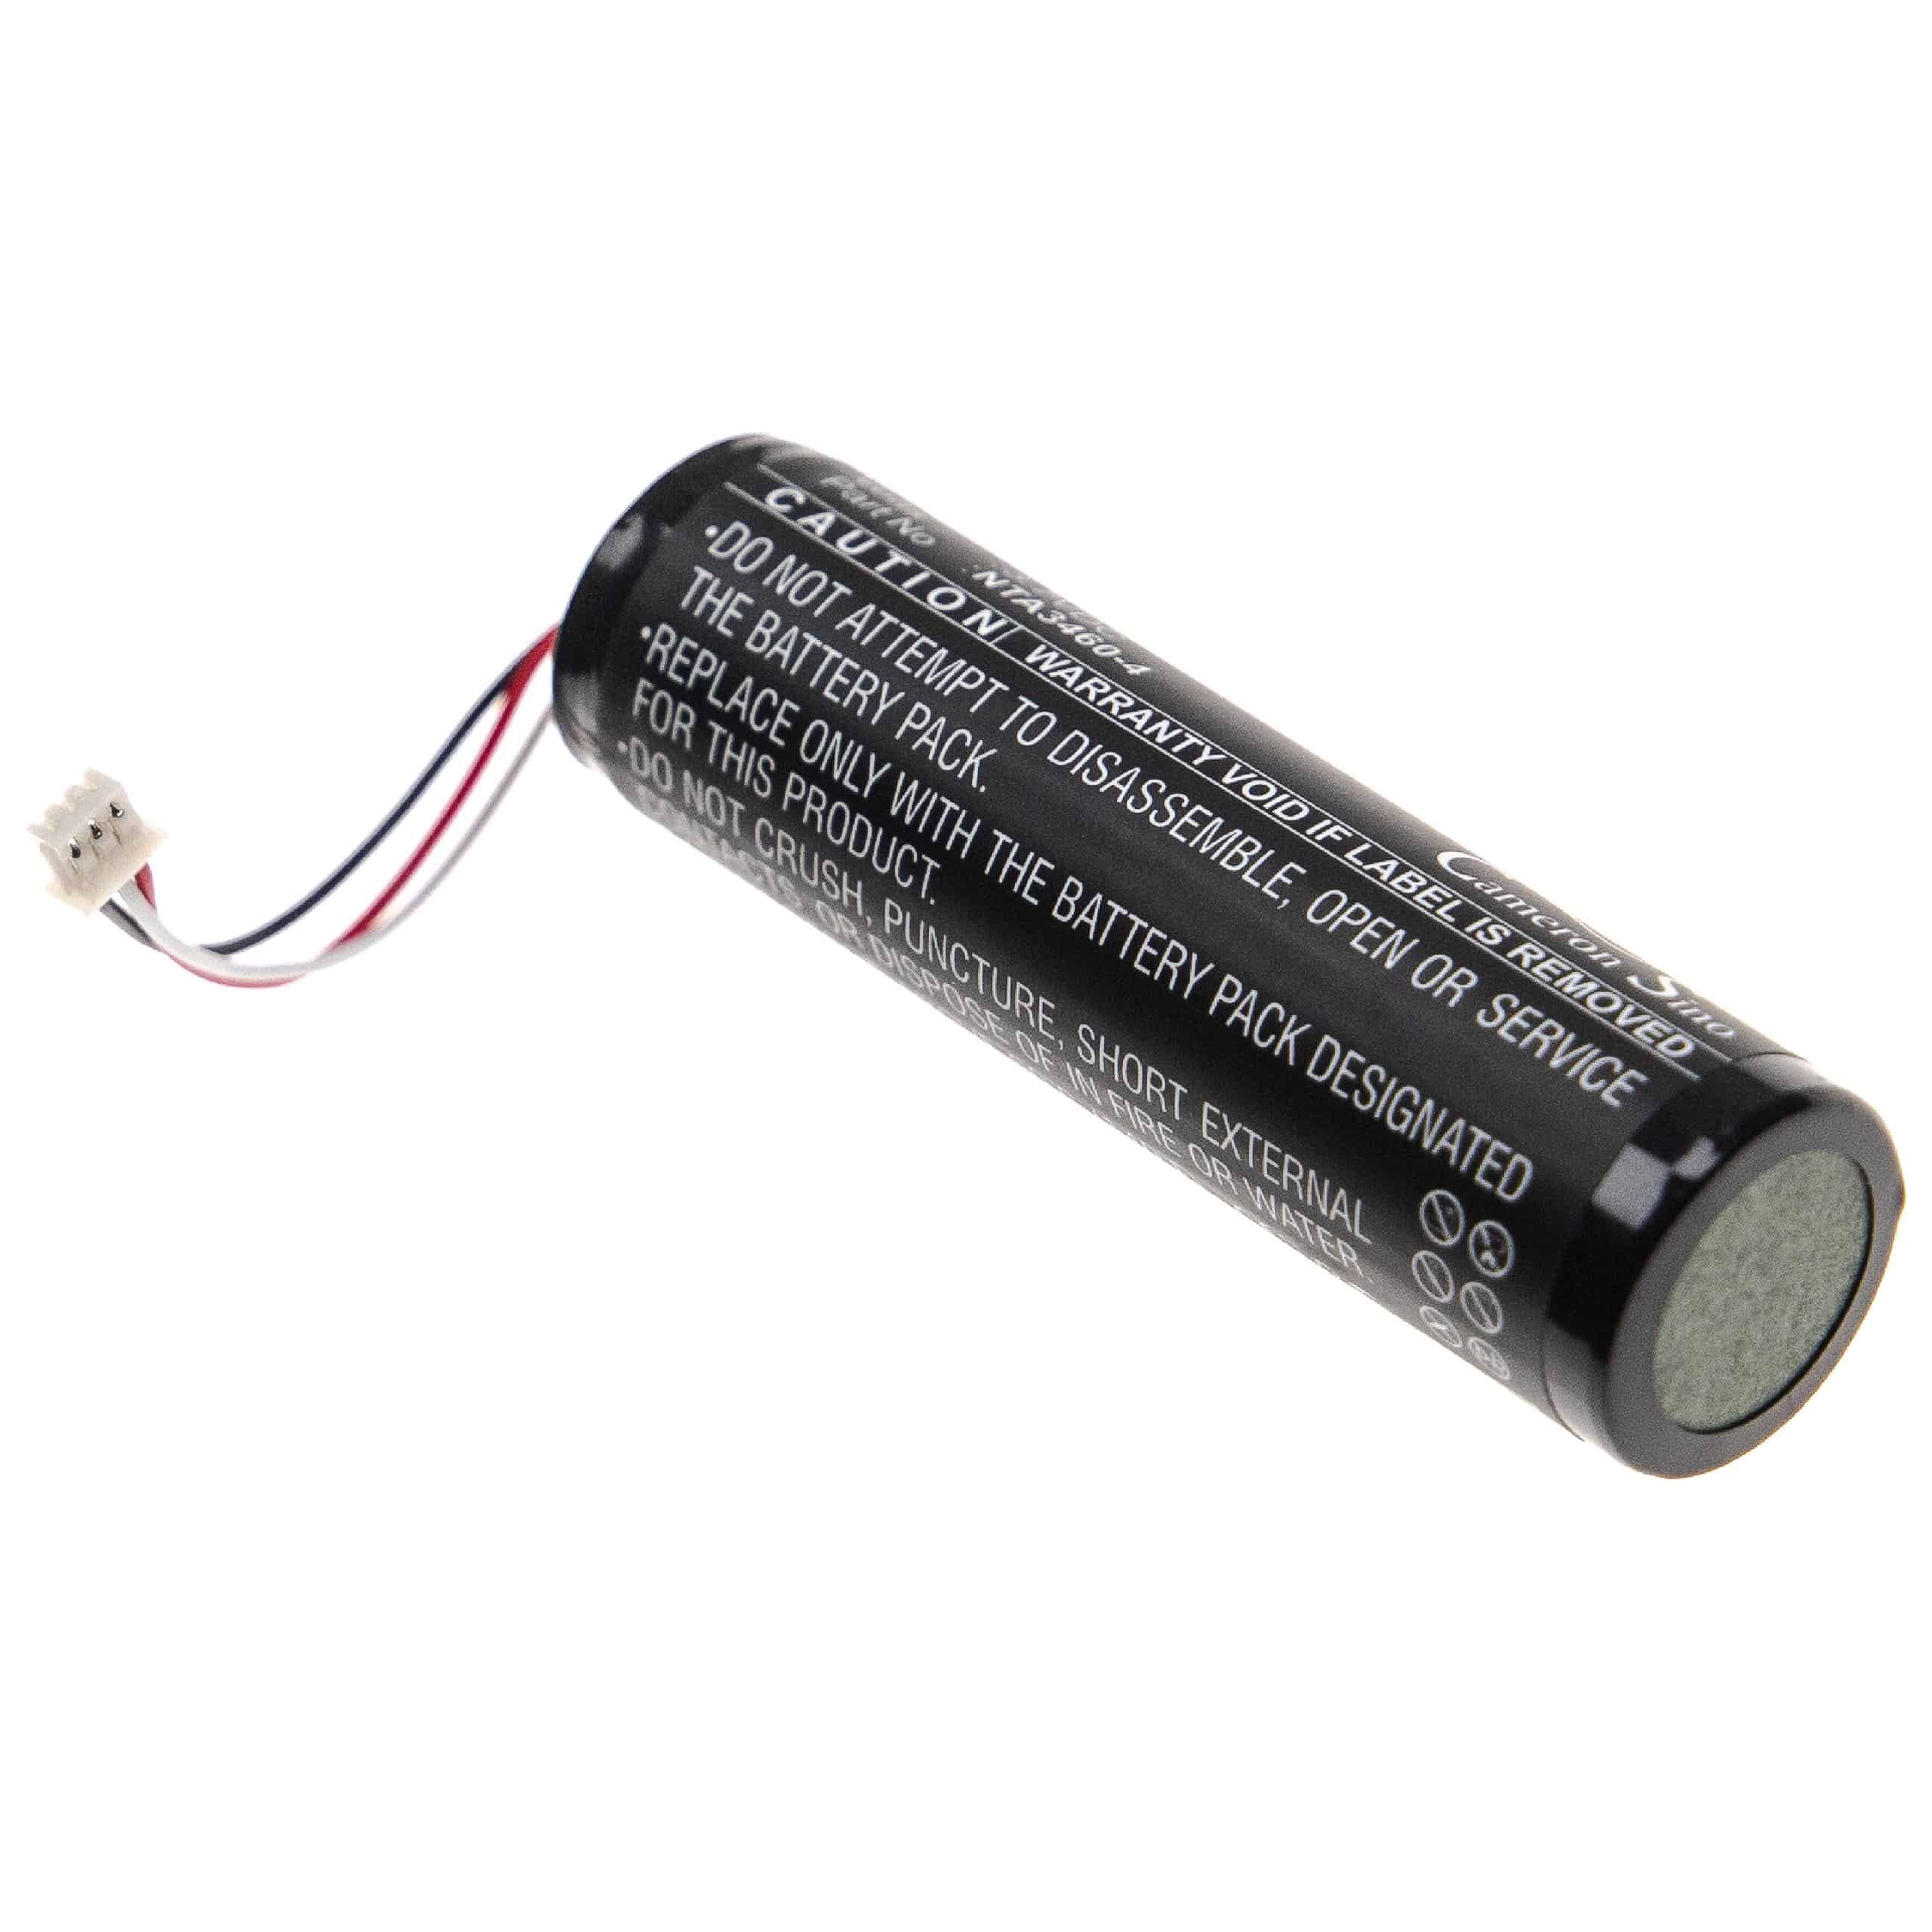 Batterie remplace Philips NTA3459-4, NTA3460-4 pour moniteur bébé - 2600mAh 3,7V Li-polymère